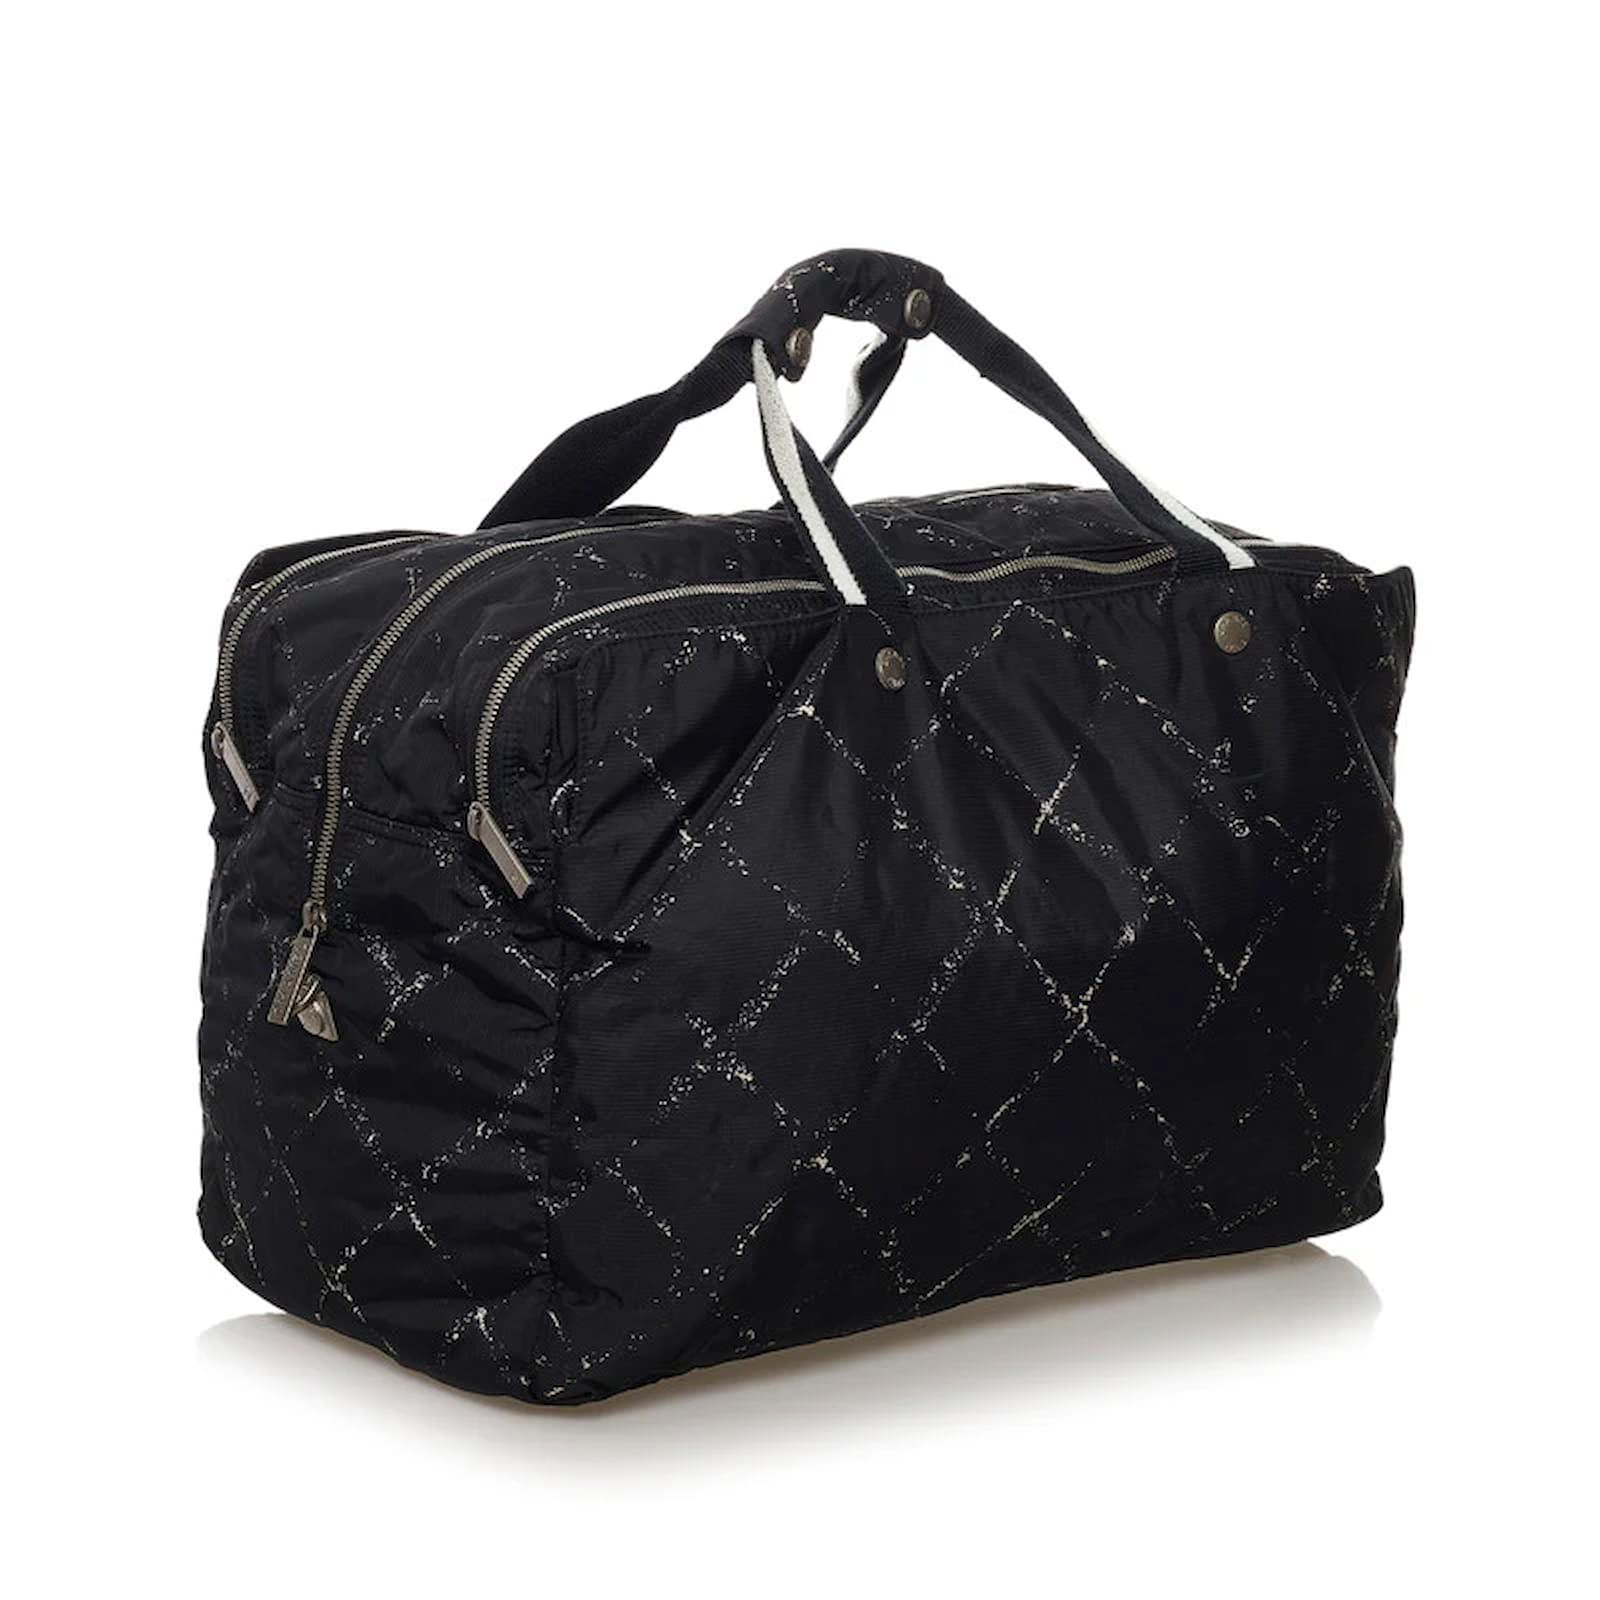 CHANEL Duffle Bags & Handbags for Women